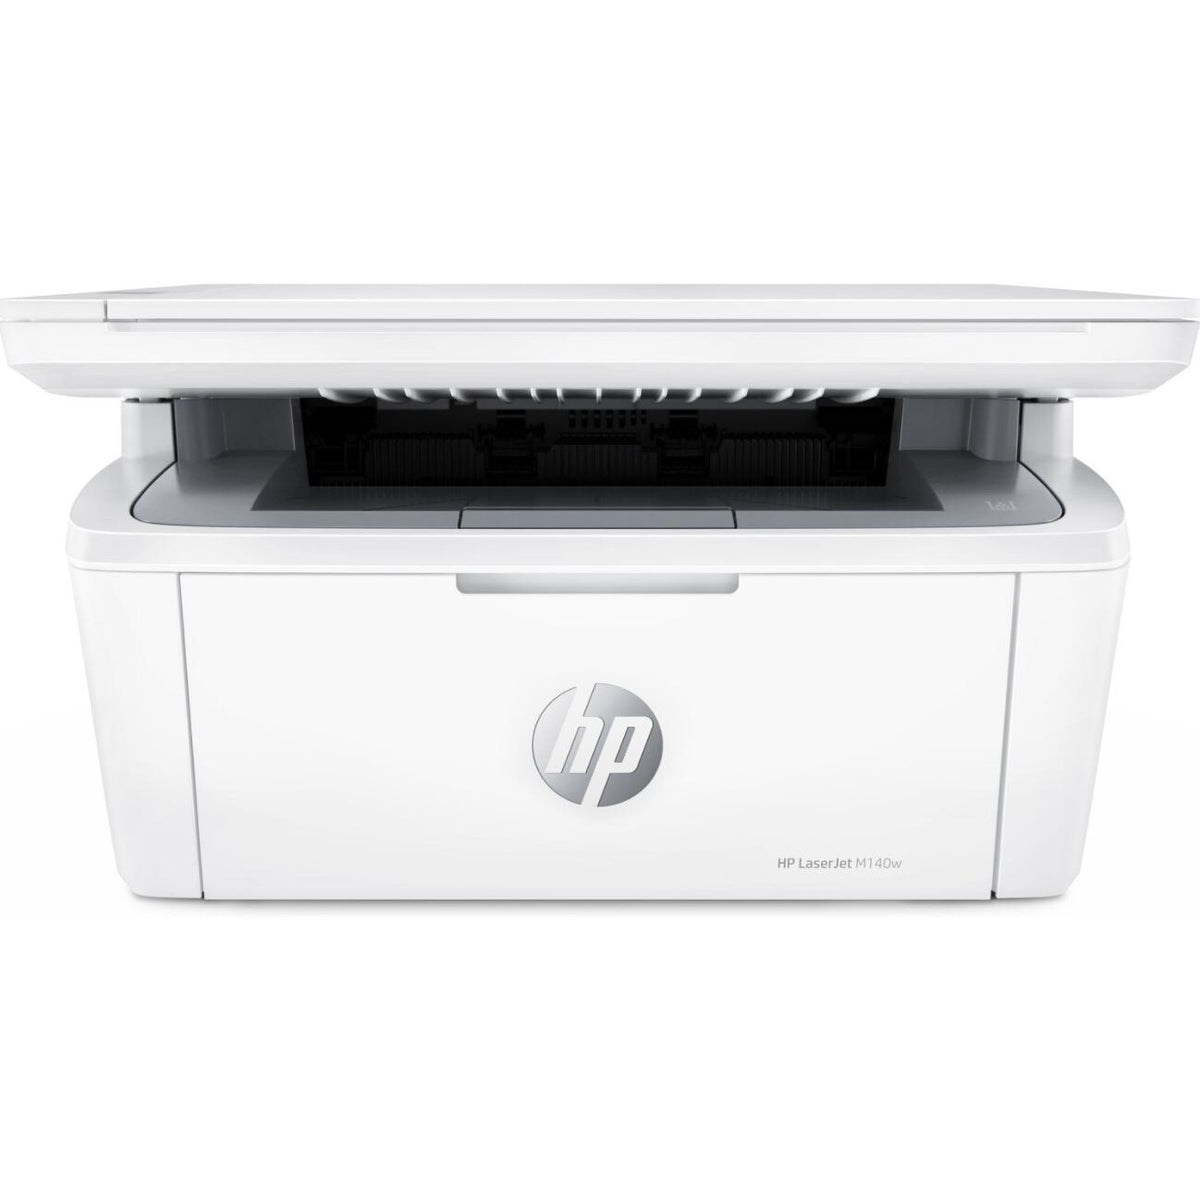 HP LaserJet M140w tiskárna, A4, černobílý tisk, Instant Ink